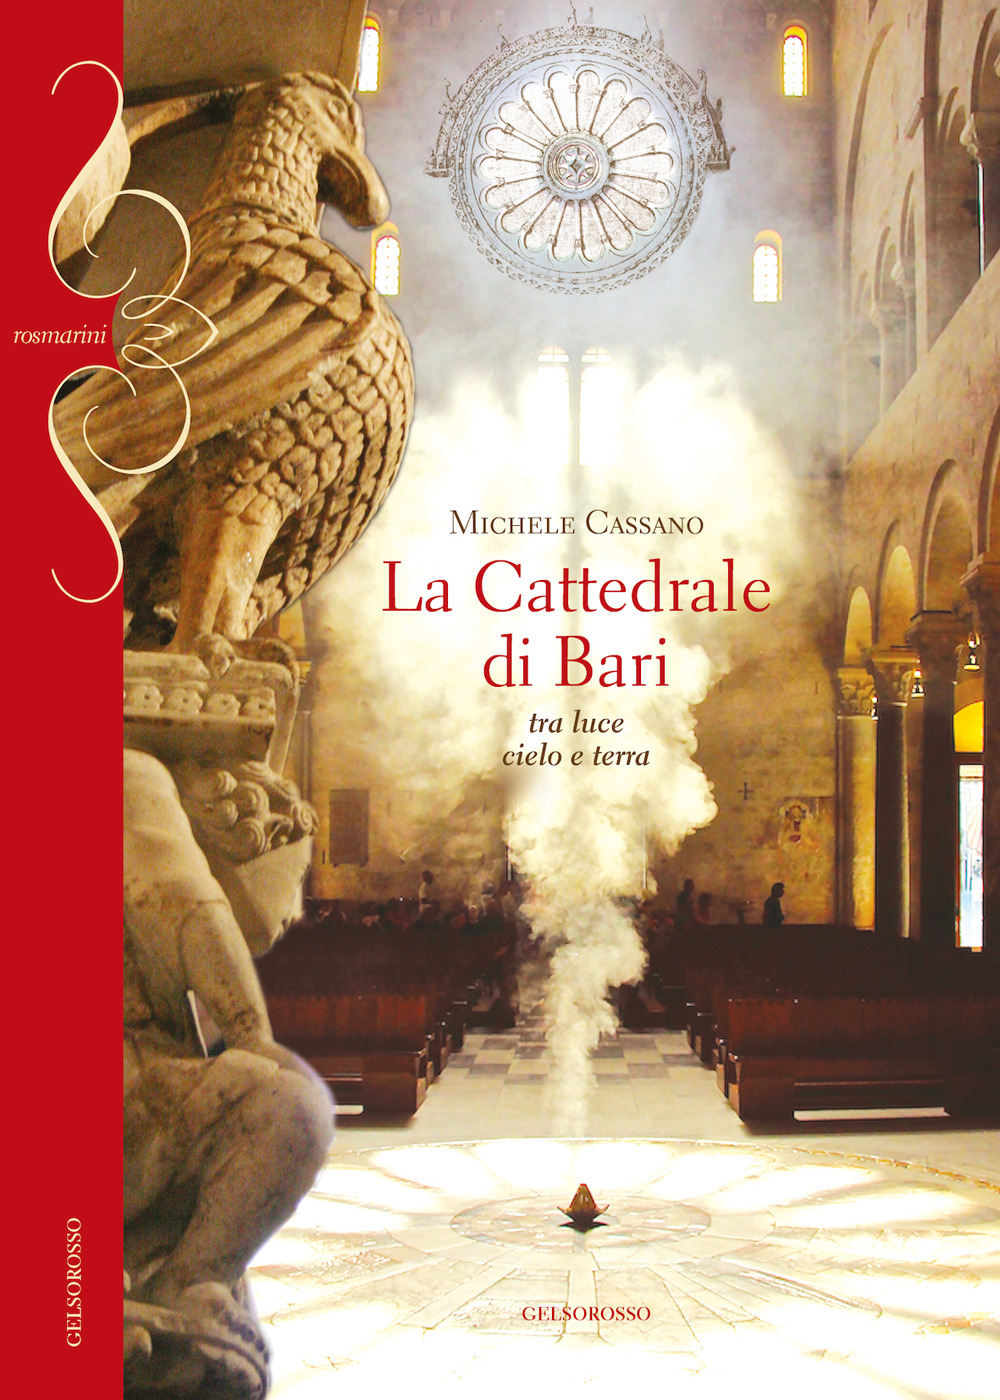 La cattedrale di Bari. Tra luce cielo e terra